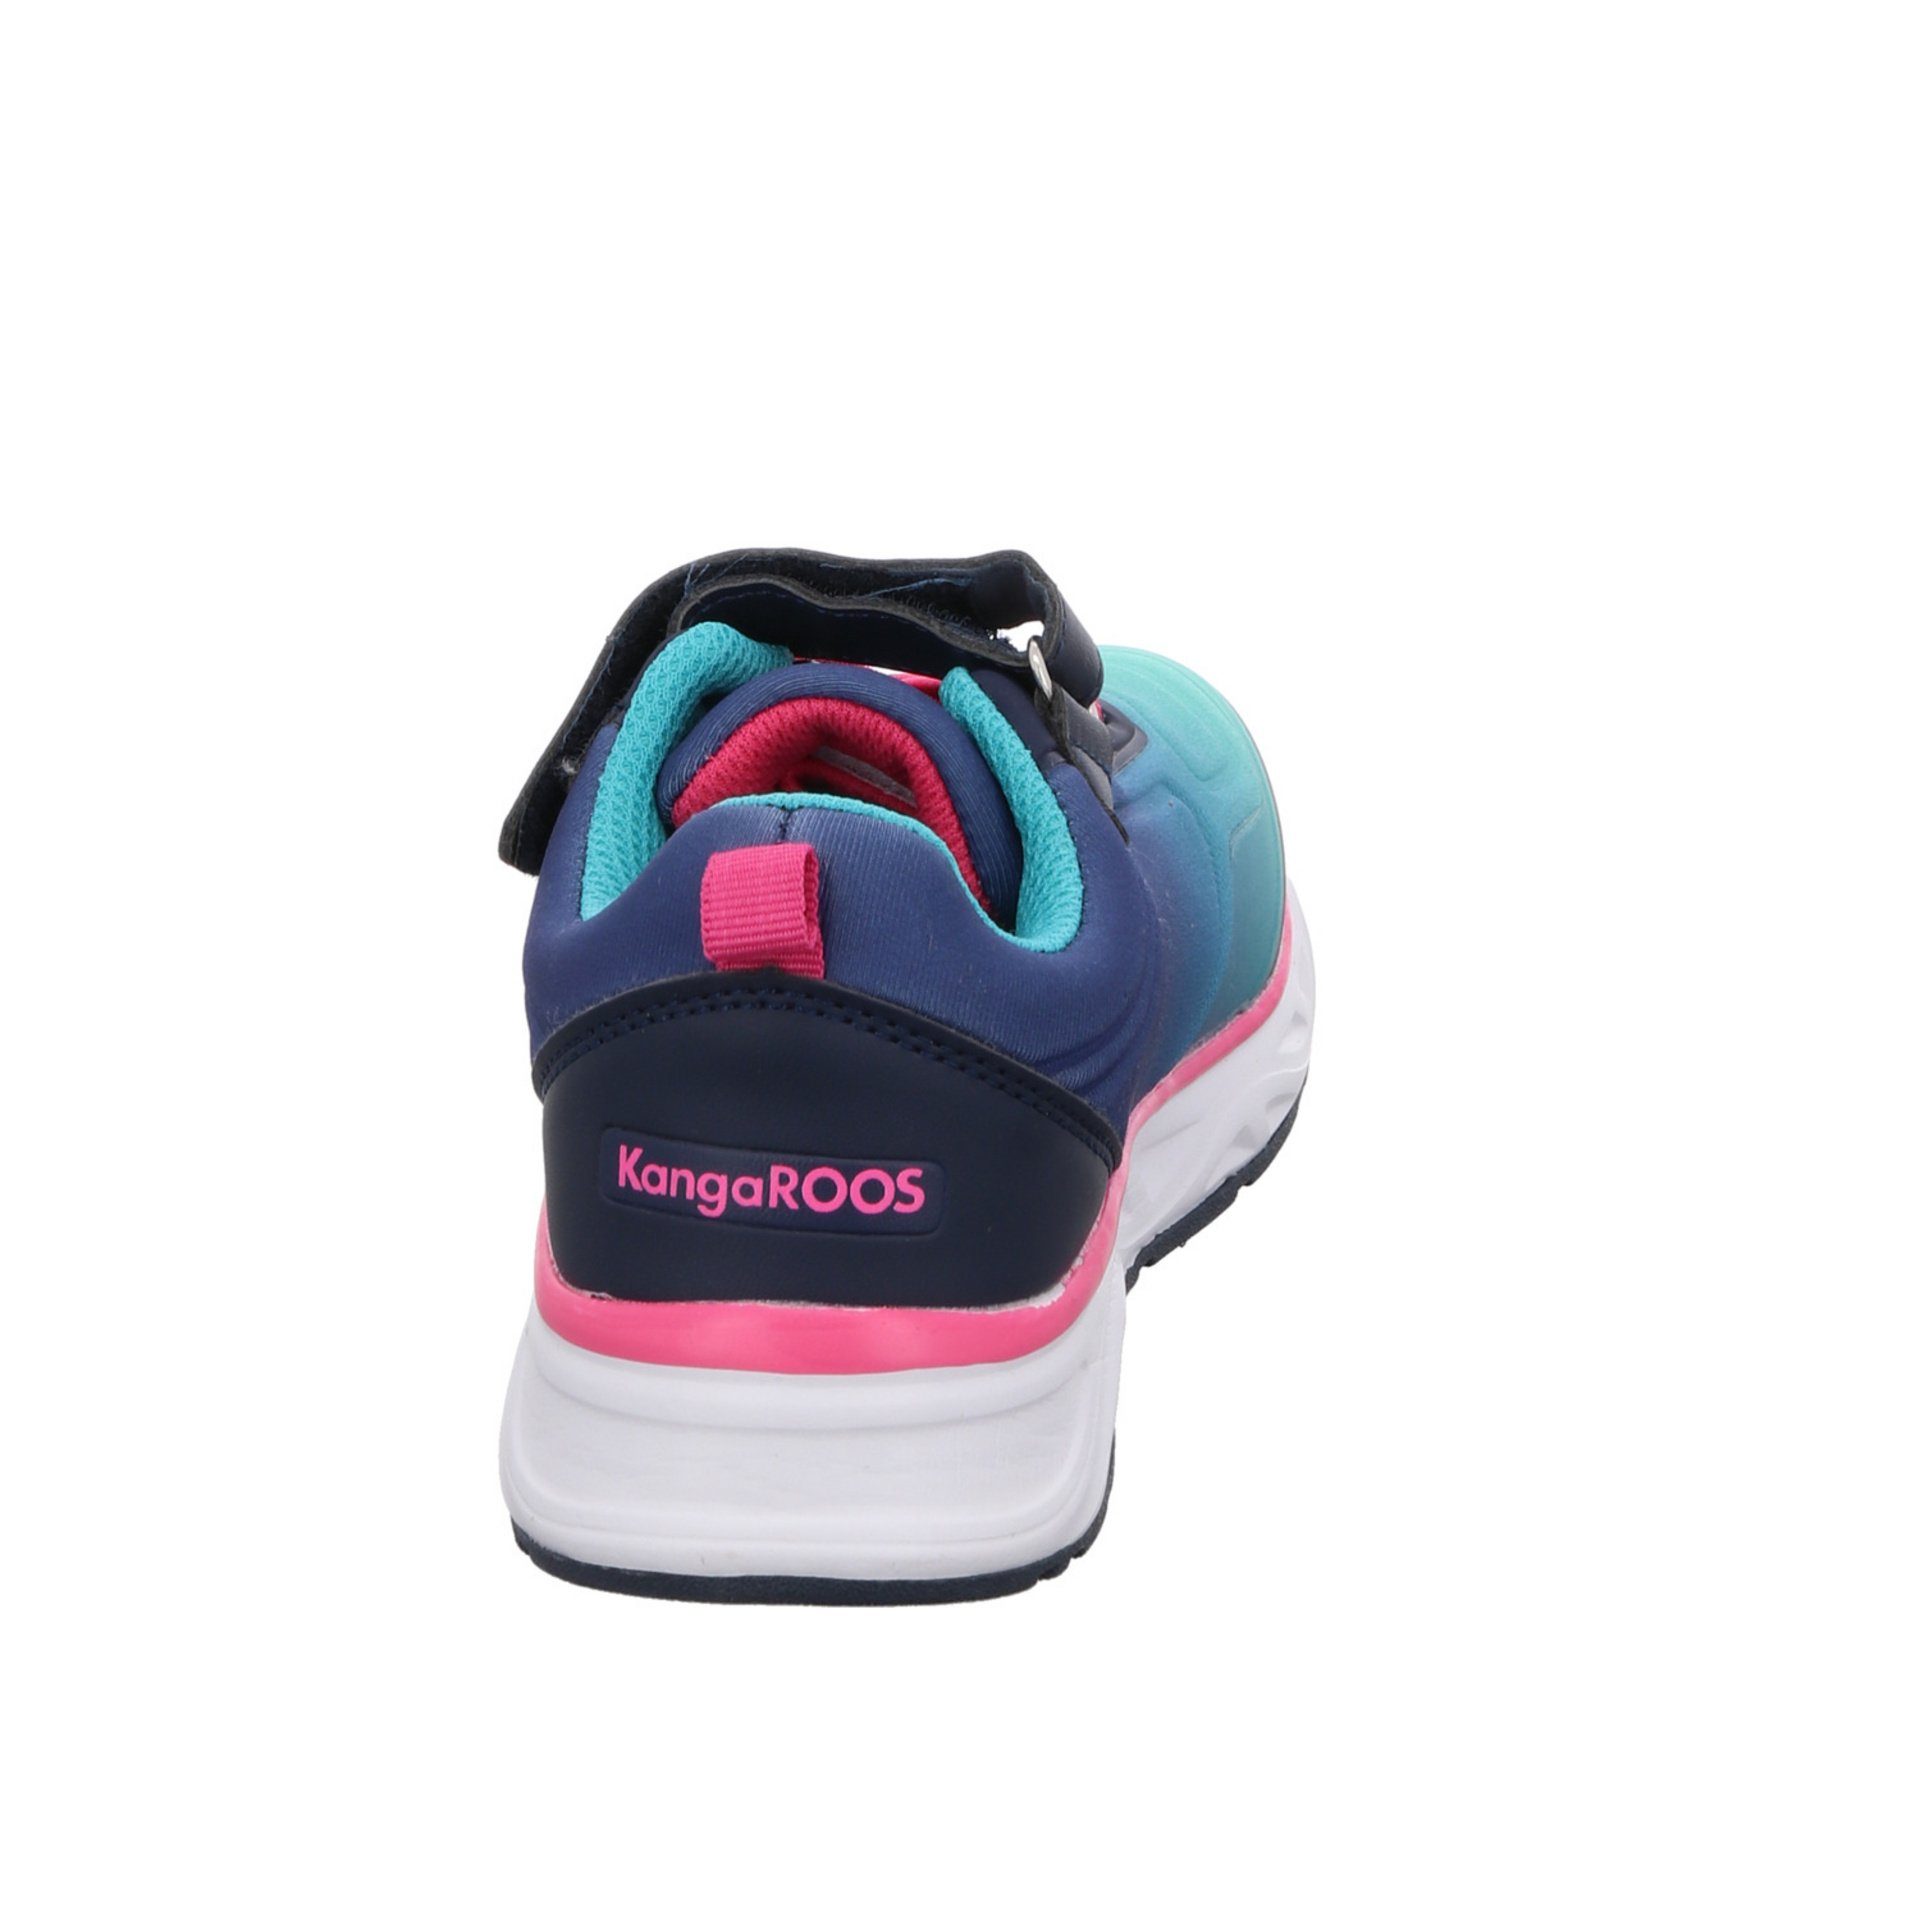 Sneaker KangaROOS Synthetikkombination Sneaker Logoschriftzug Airos K-OK navy/daisy/pink